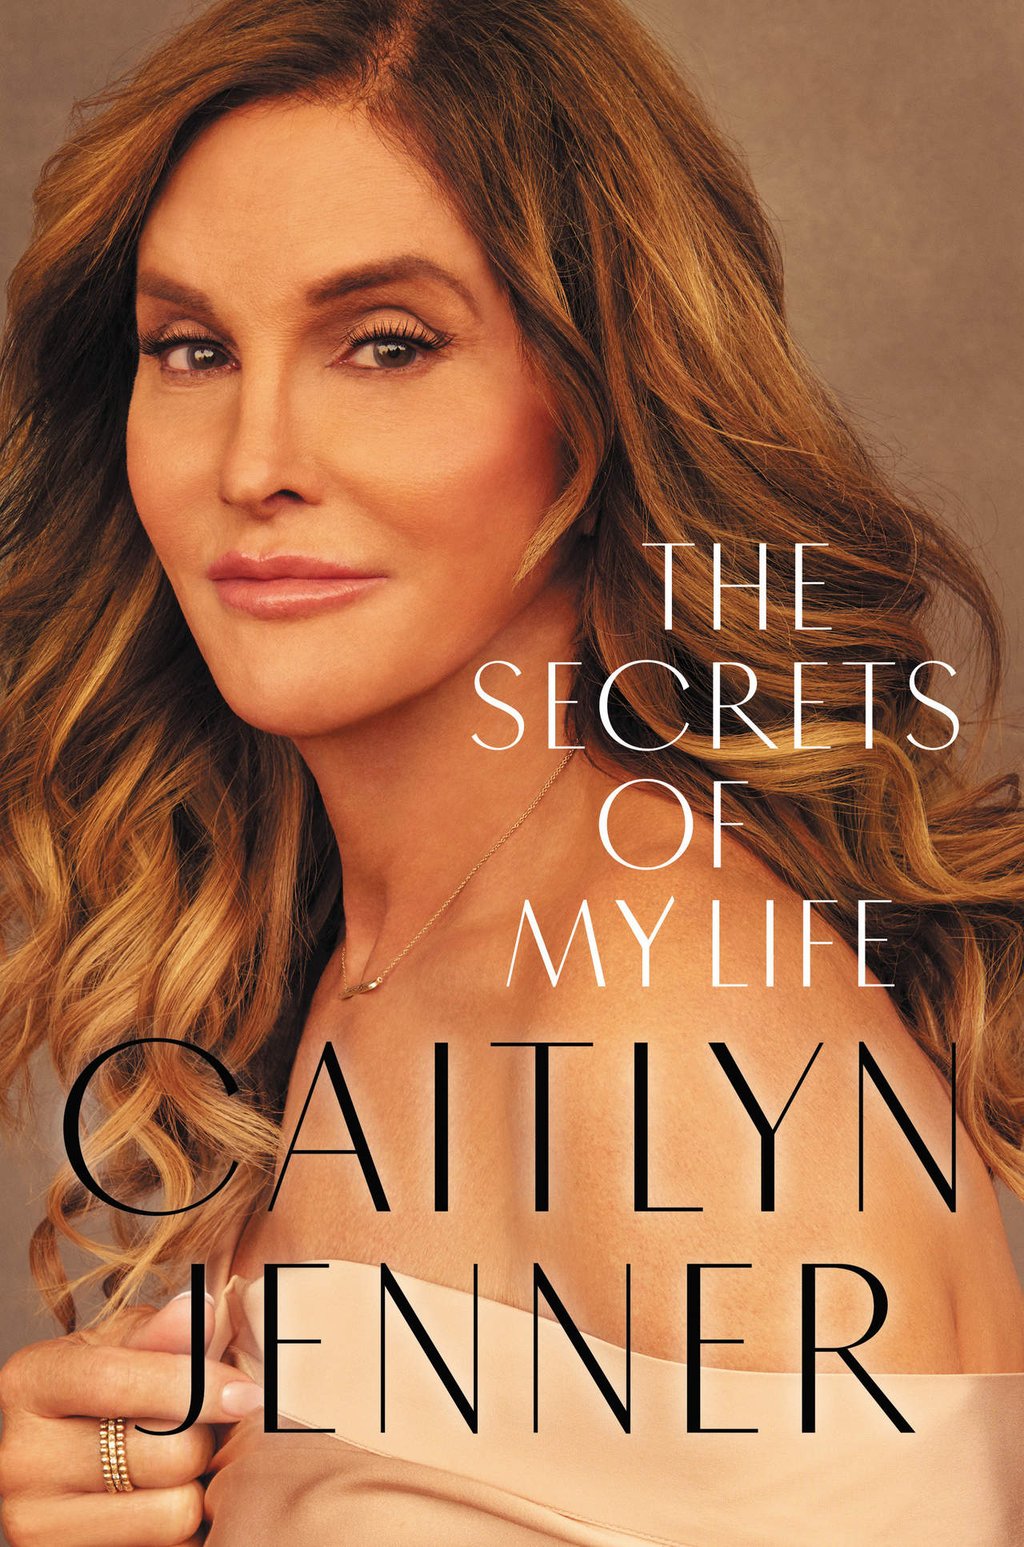 Habla sobre el suicidio y cirugía Caitlyn Jenner en nuevo libro